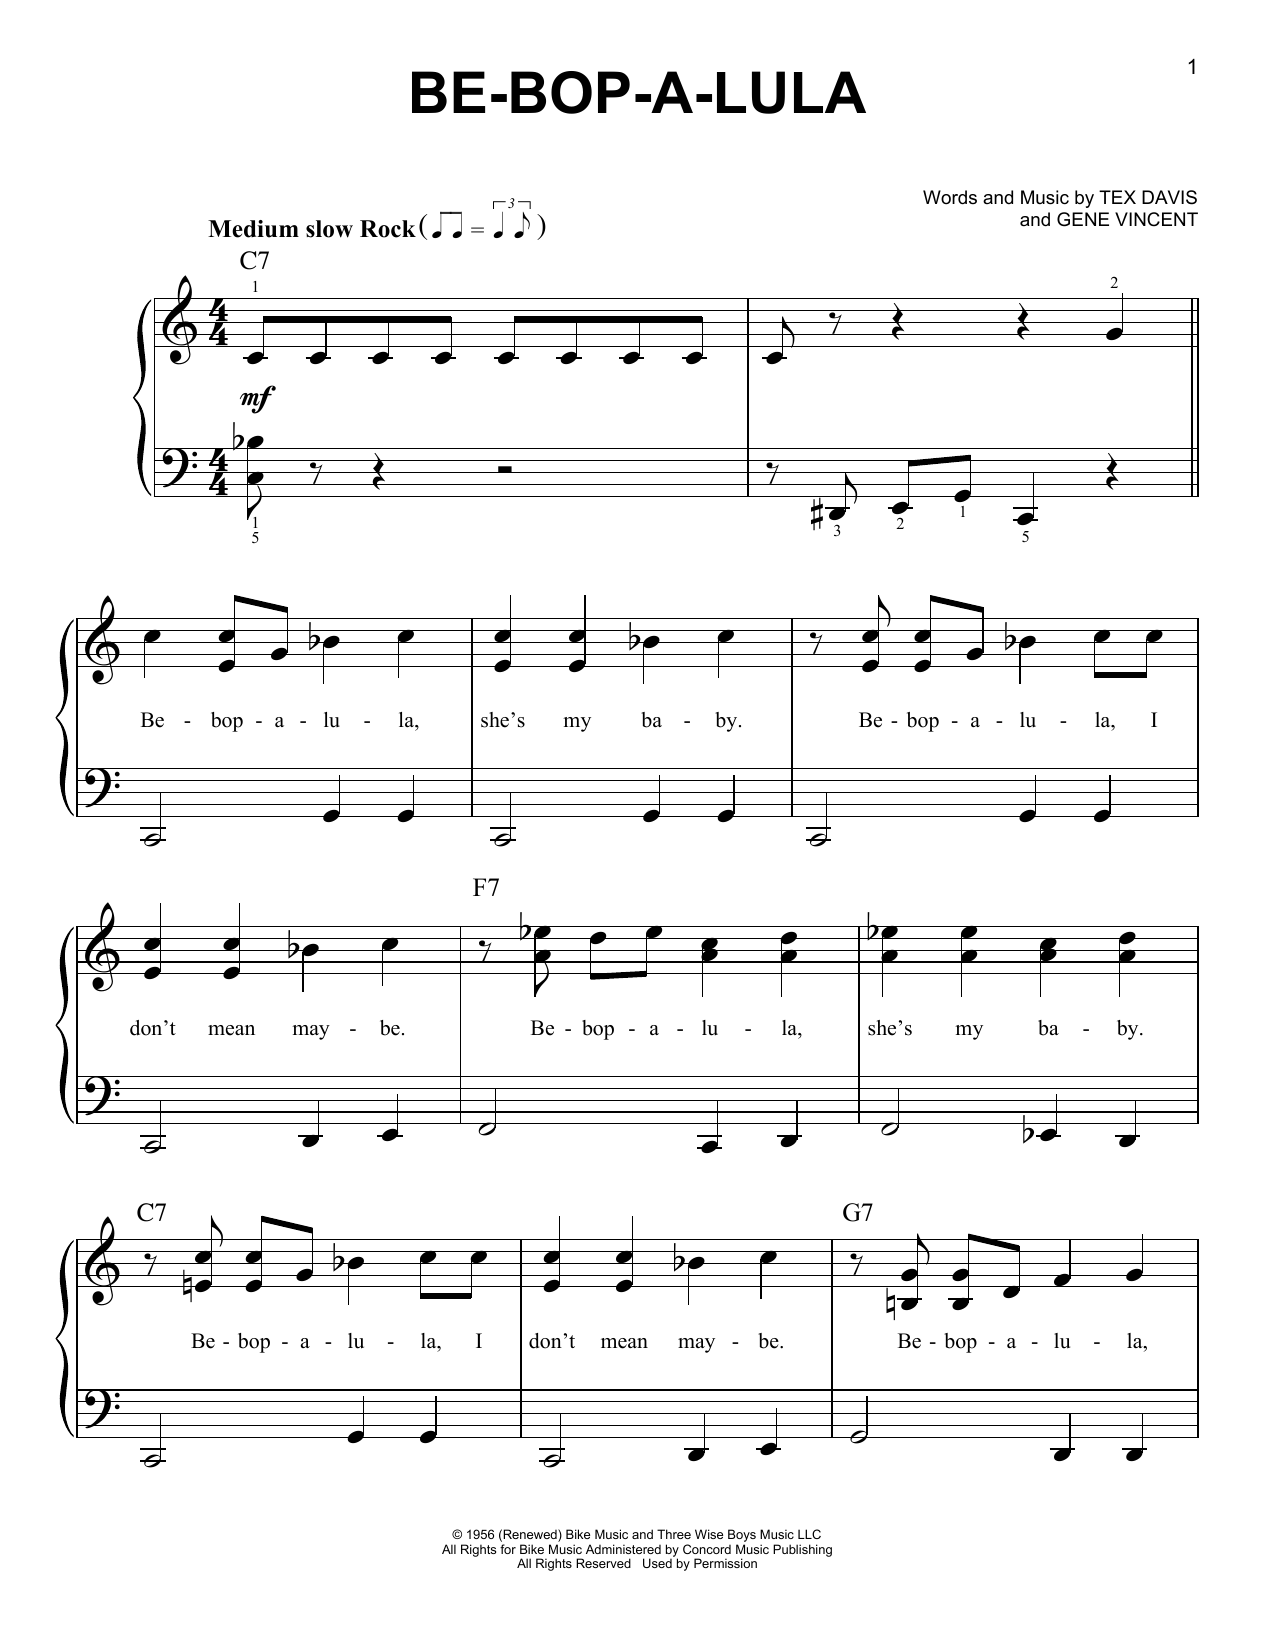 Gene Vincent Be-Bop-A-Lula Sheet Music Notes & Chords for Ukulele with strumming patterns - Download or Print PDF